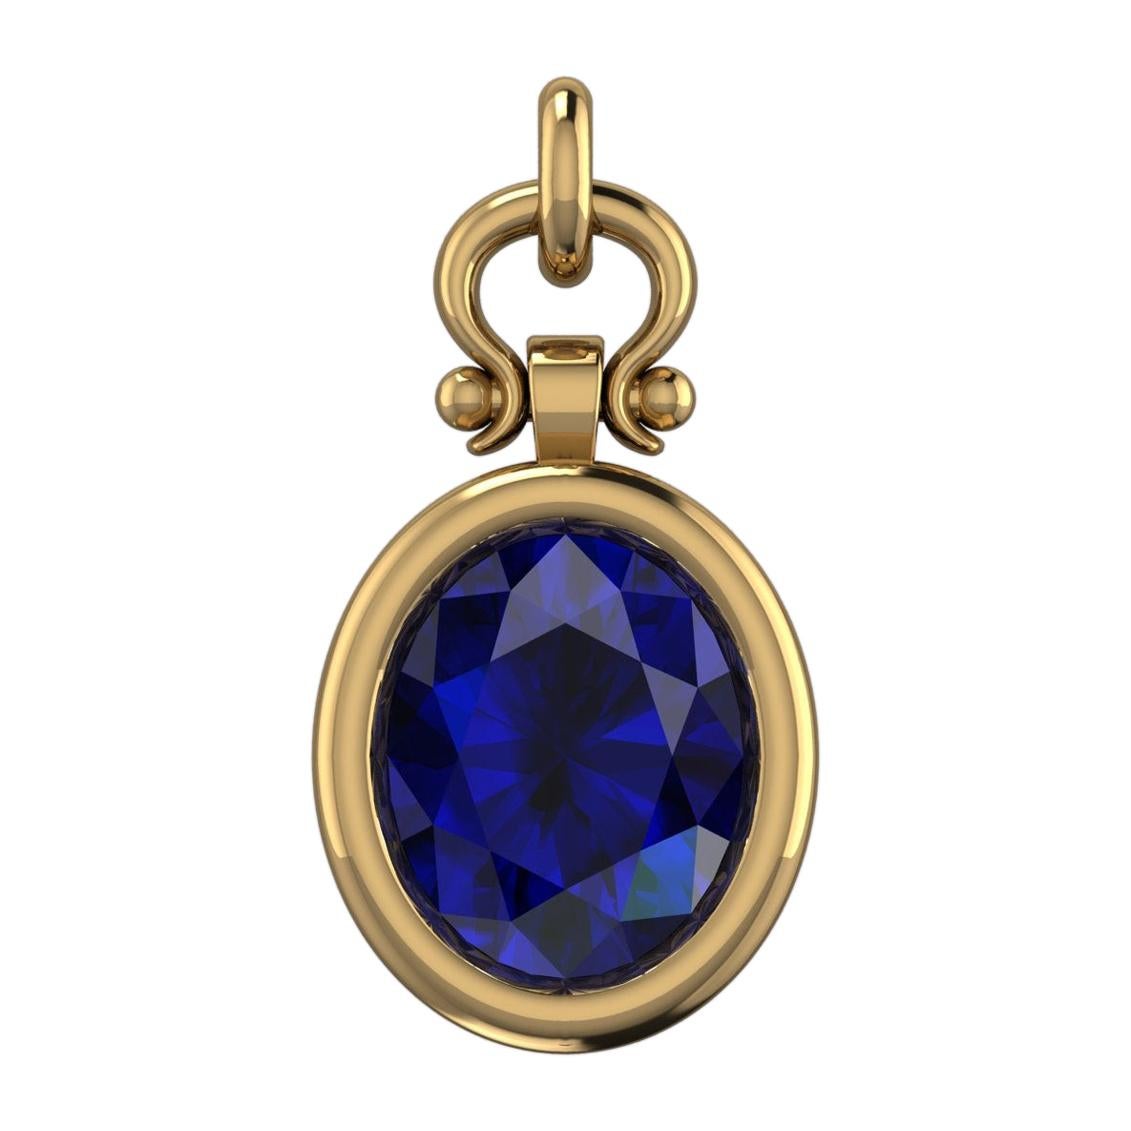 Berberyn Certified 3.04 Carat Oval Blue Sapphire Custom Pendant Necklace in 18k For Sale